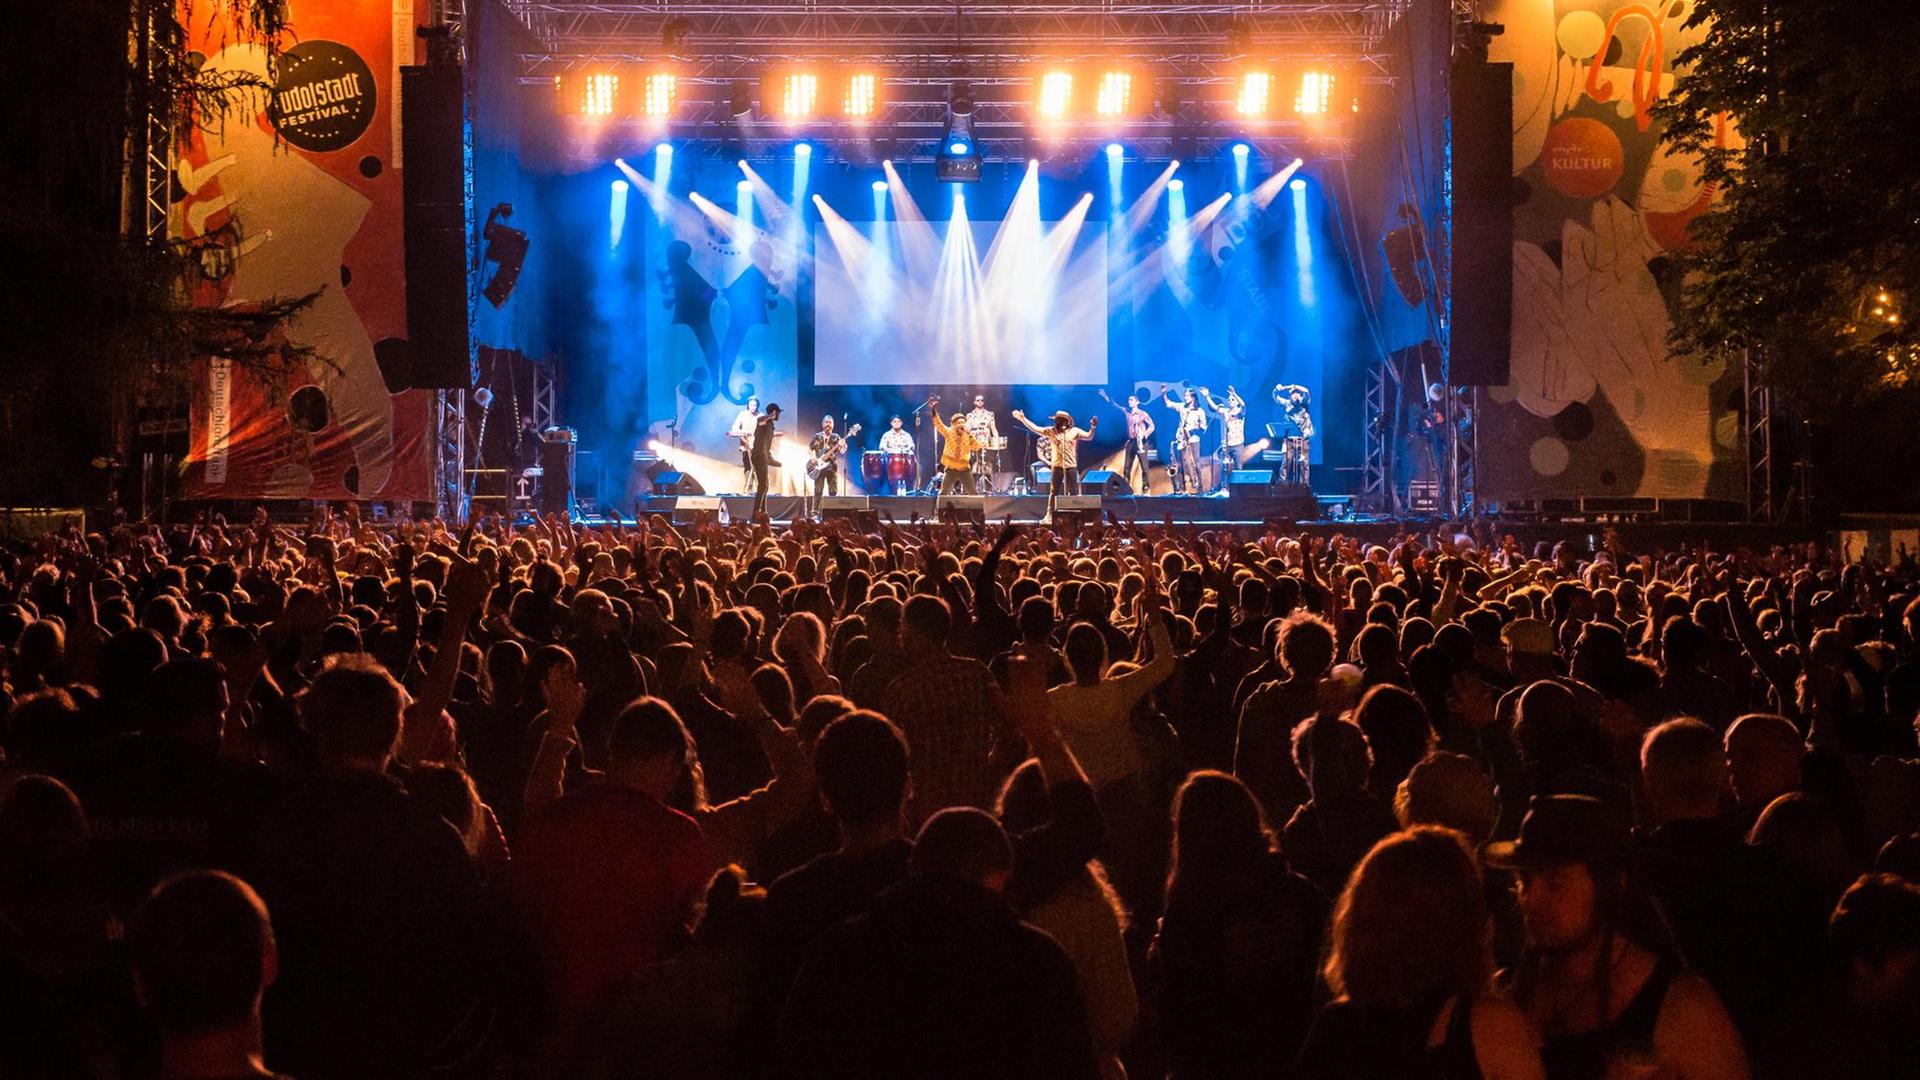 Nachtaufnahme eines Konzerts in Rudolstadt, im Vordergrund ist das Puiblikum zu sehen, im Hintergrund die hell erleuchtete Bühne mit Musikern.